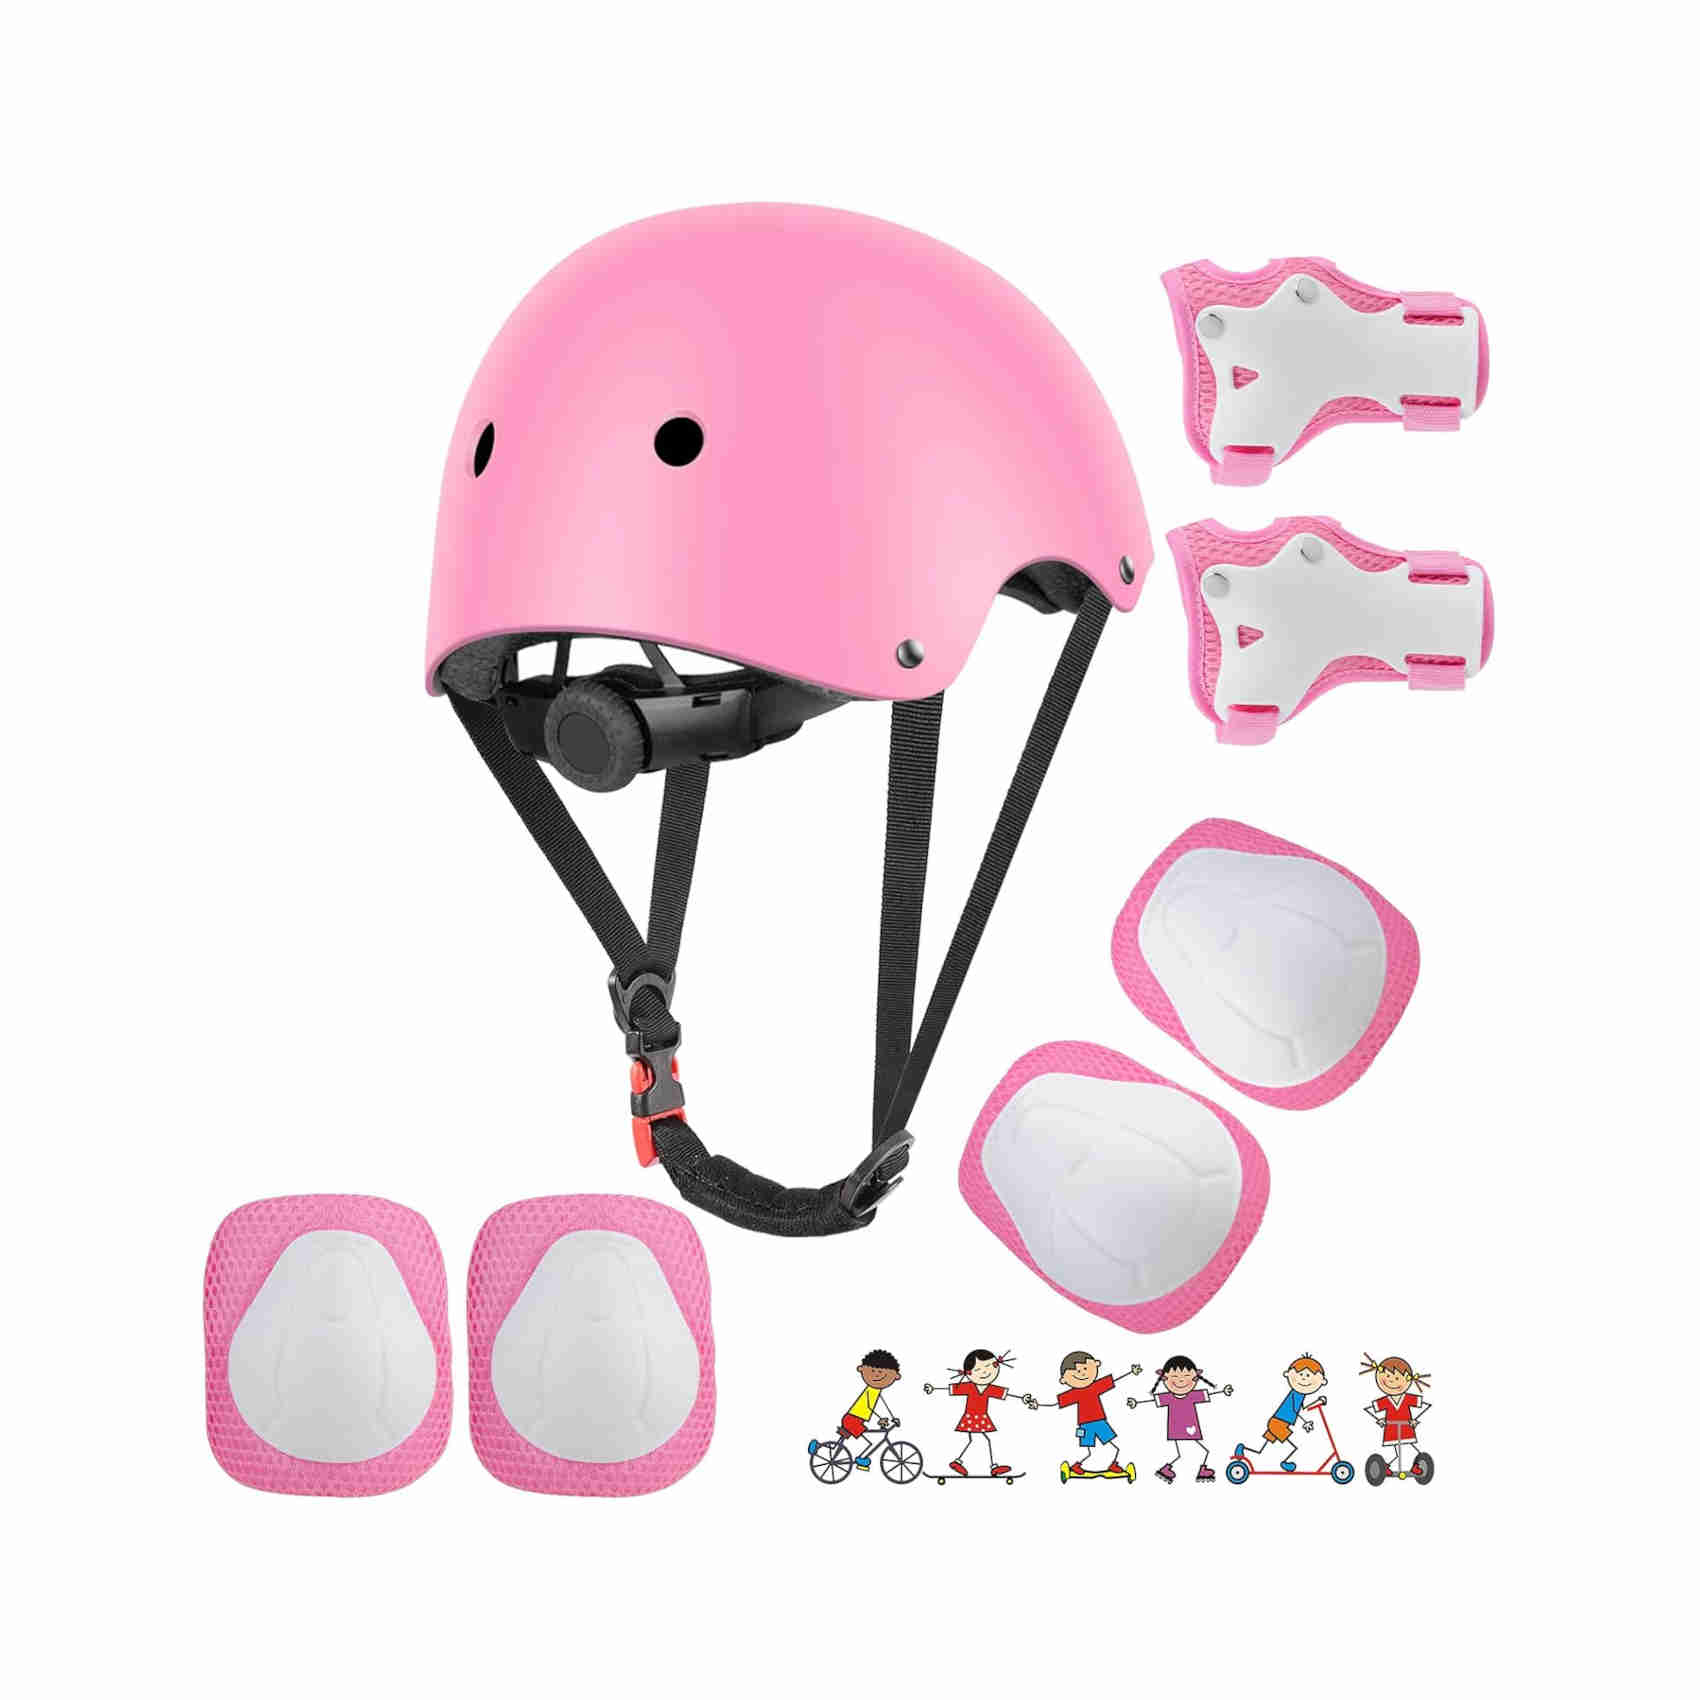 rdnstreetmarket wayin casco bici protezioni set per bambini regolabile gomitiere polso ginocchiere per skateboard pattini in linea bicicletta protezione bambina (rosa bianco uomo